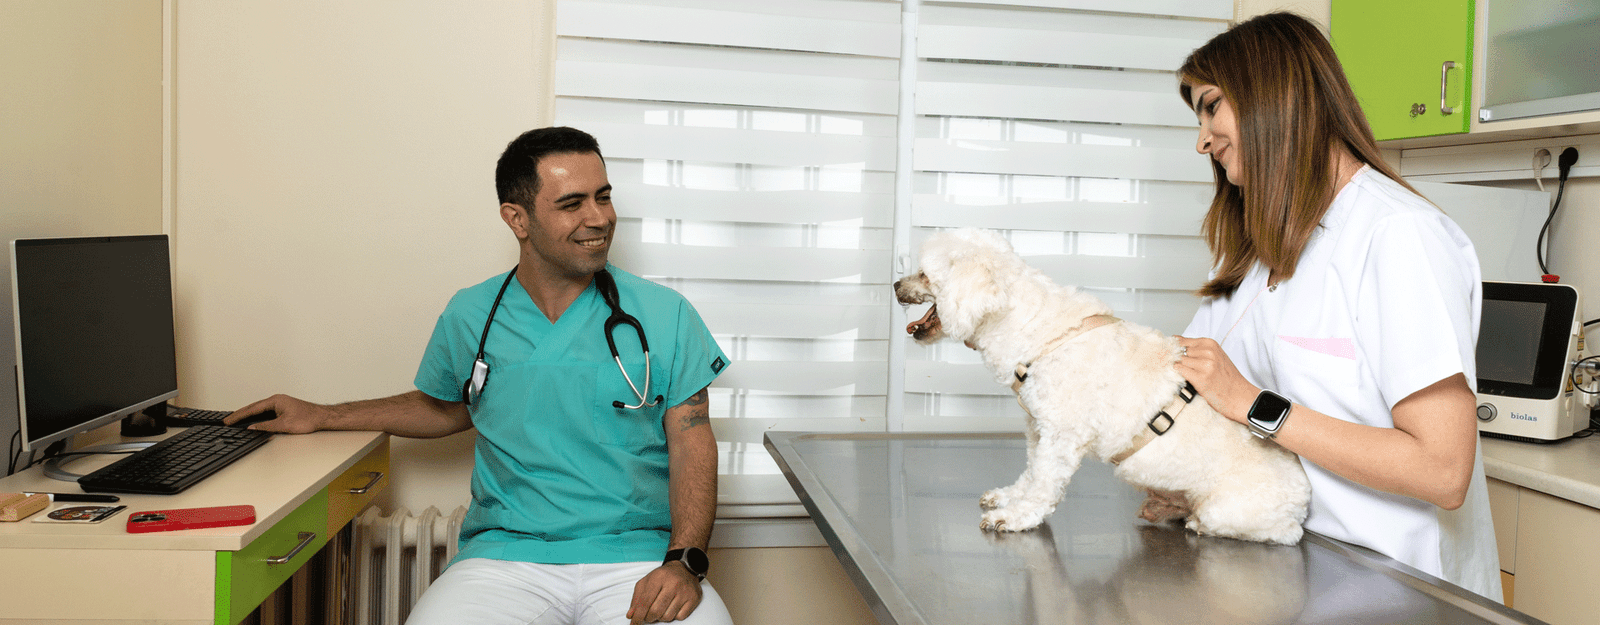 veteriner hekim faruk yasin erdem köpek bakımı görseli